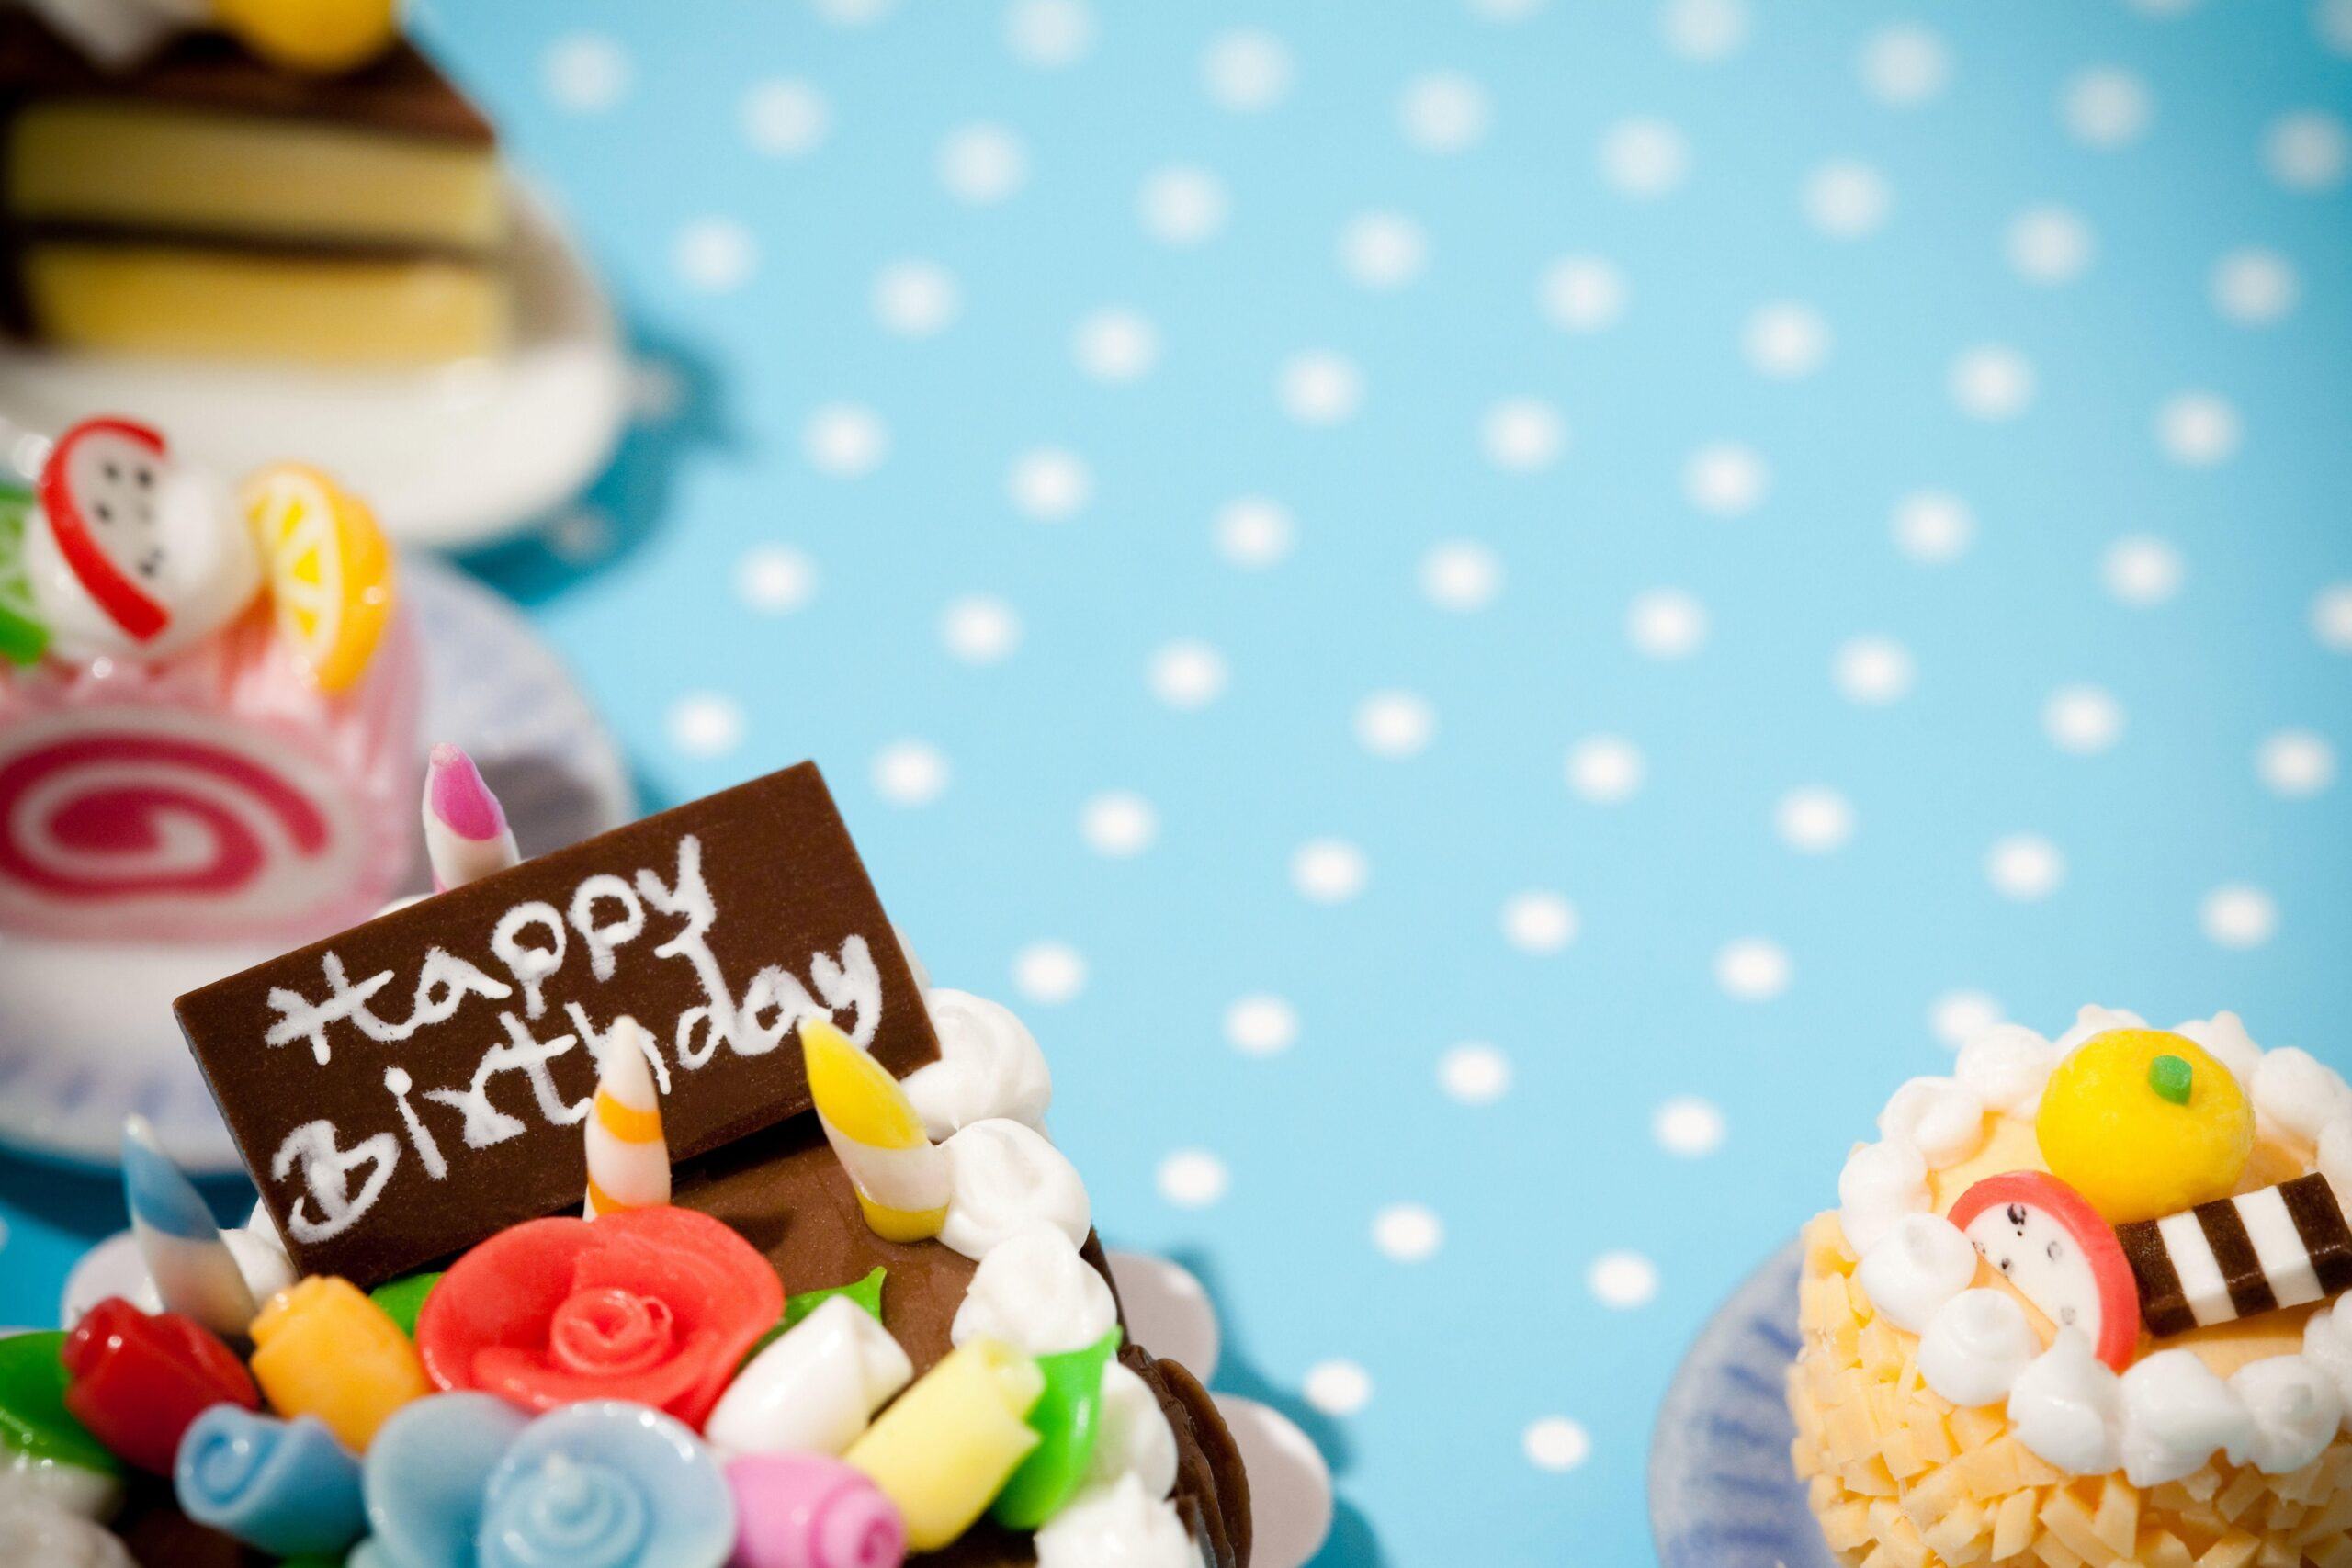 Bánh sinh nhật đẹp 2024: Sinh nhật không thể thiếu những bánh kem độc đáo và ấn tượng. Năm 2024, các loại bánh sinh nhật đẹp, sáng tạo sẽ trở thành xu hướng mới, được săn đón nhất. Từ bánh kem 3D đến bánh macarons, tất cả đều đáp ứng hoàn hảo những tiêu chí giúp trở thành ngôi sao của bữa tiệc sinh nhật tuyệt vời.